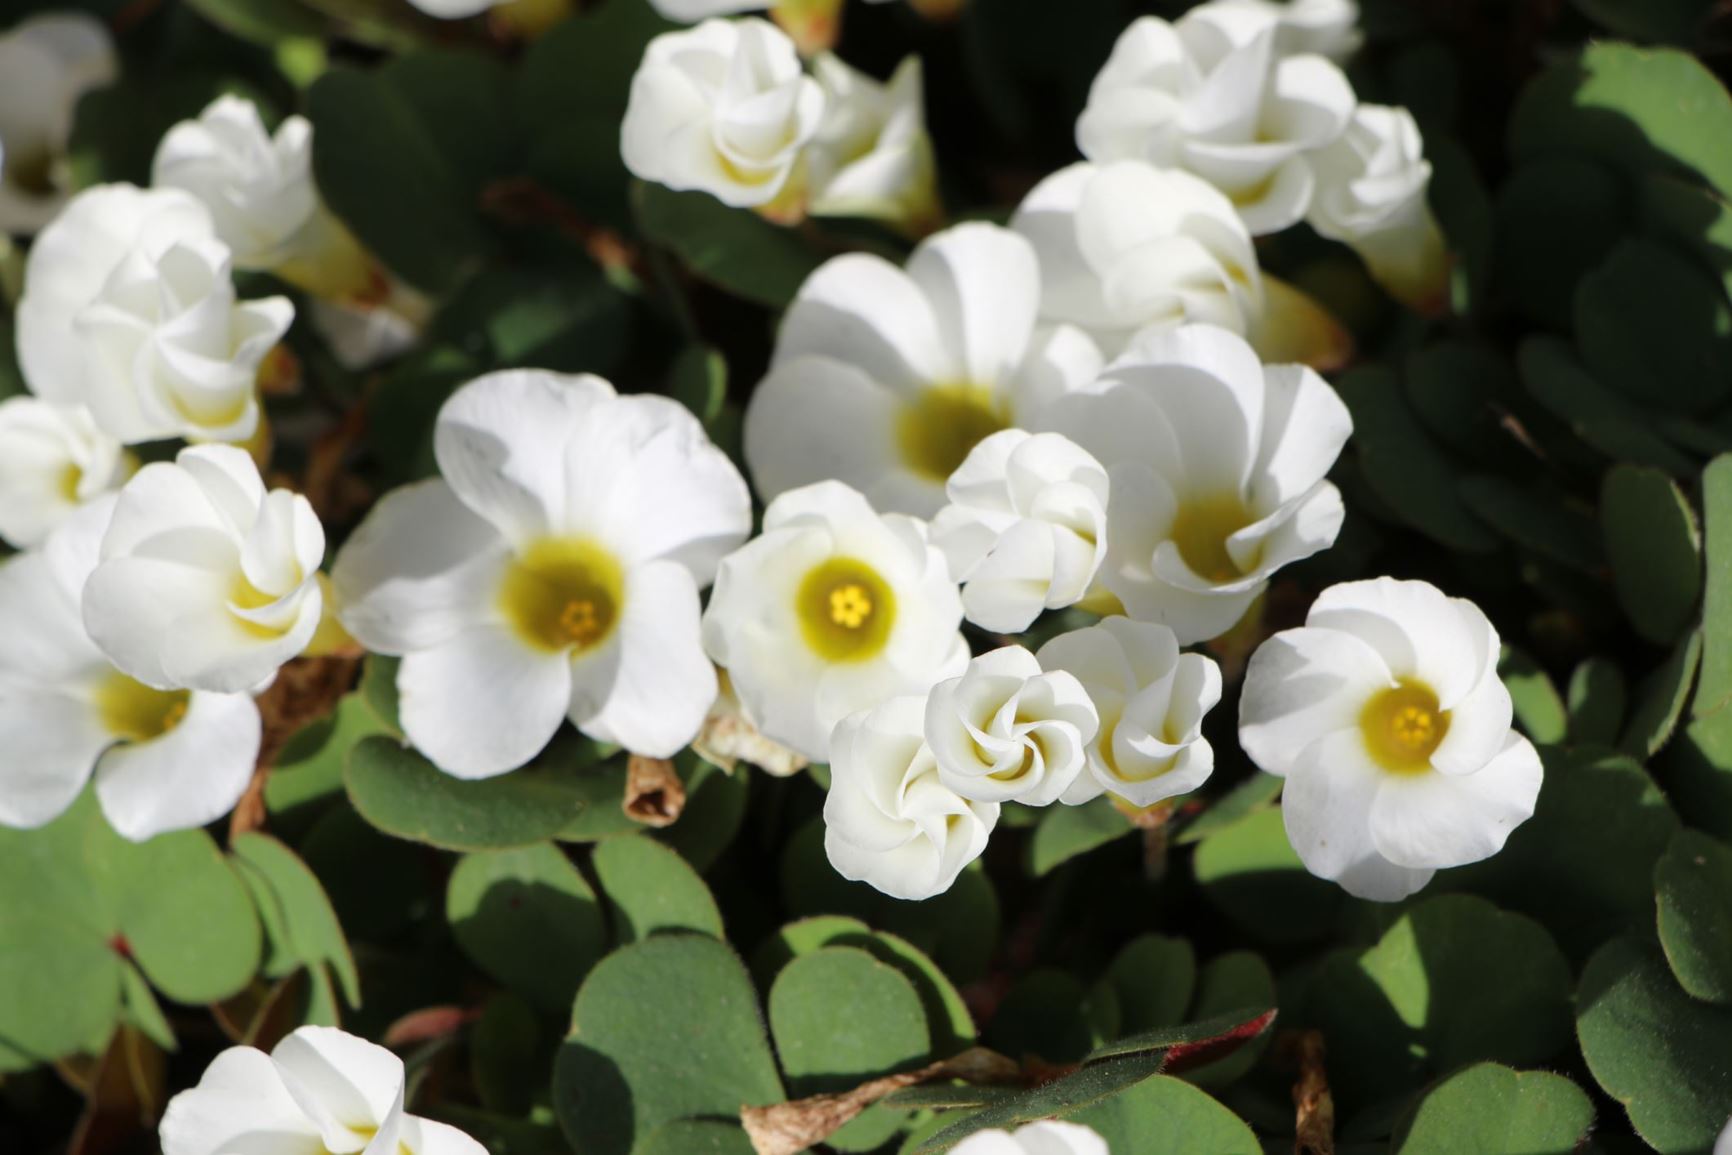 Oxalis 'Nevo' White flower - חמציץ 'נבו לבן', חמציץ מכלוא 'לבן'